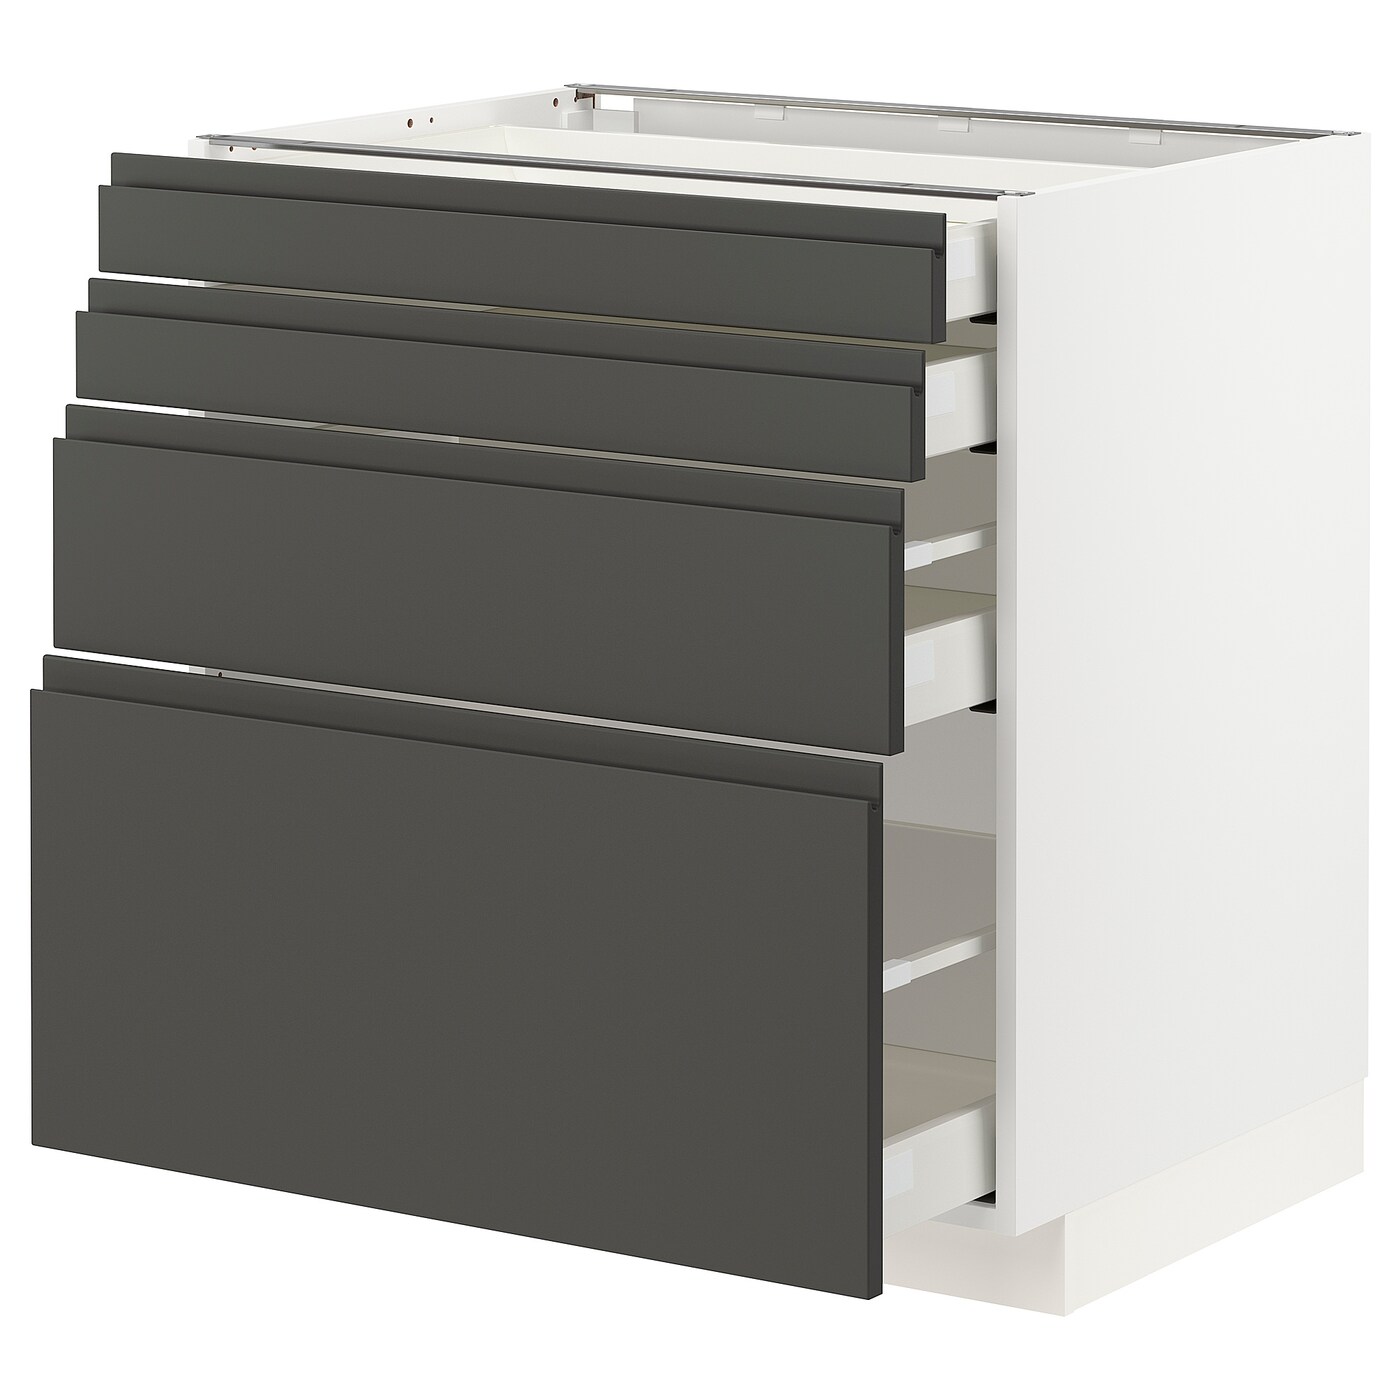 Напольный кухонный шкаф  - IKEA METOD MAXIMERA, 88x61,9x80см, белый/серый, МЕТОД МАКСИМЕРА ИКЕА